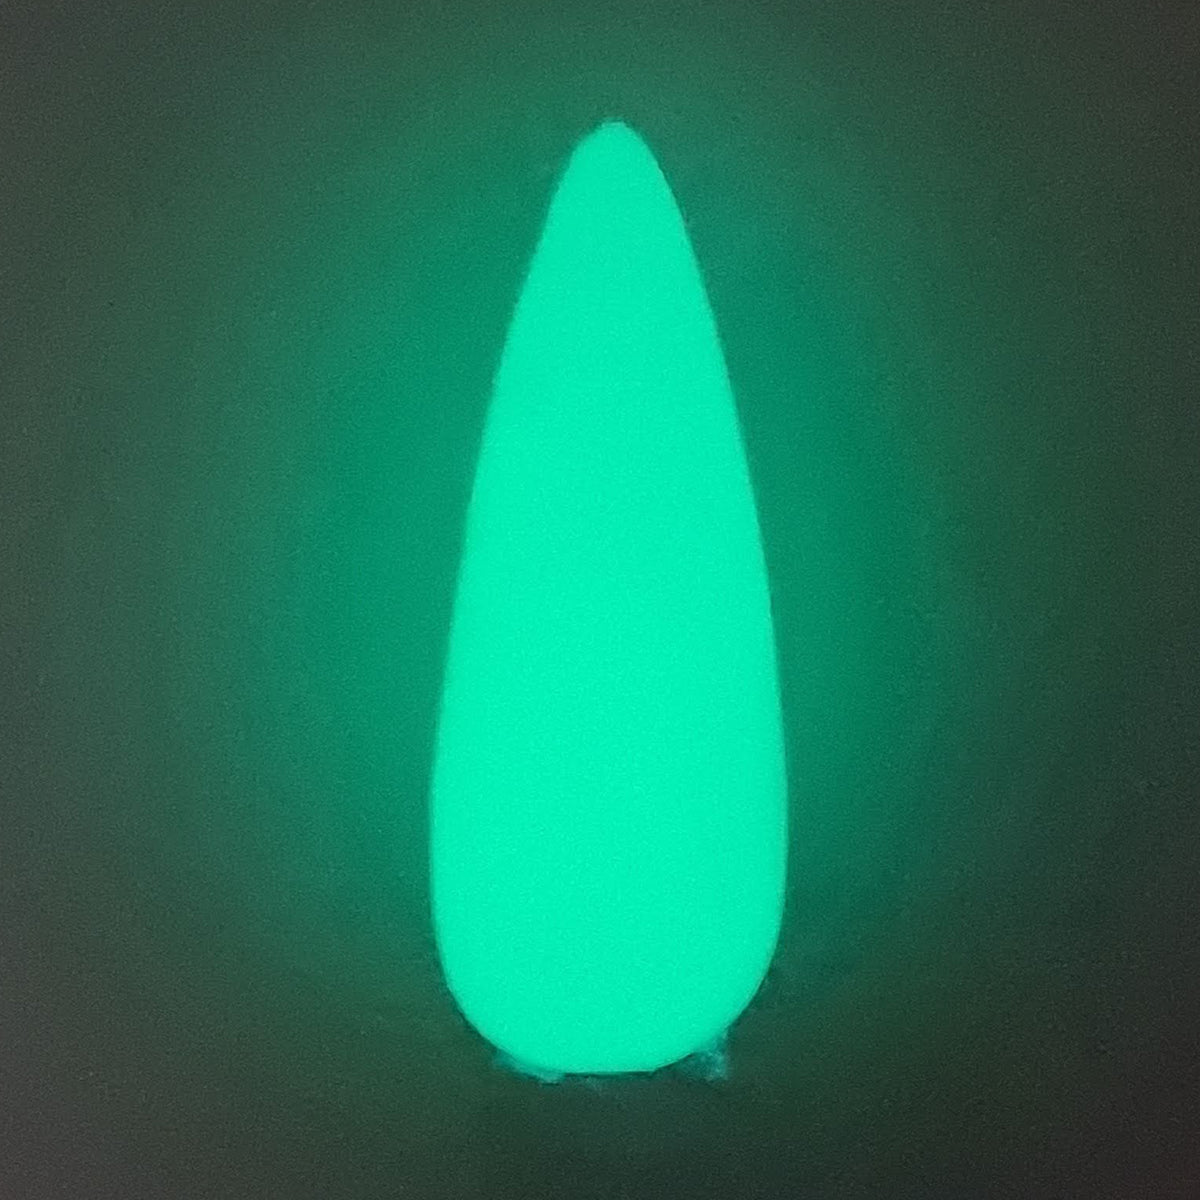 Swatch of Green Lantern Dip Powder in dark